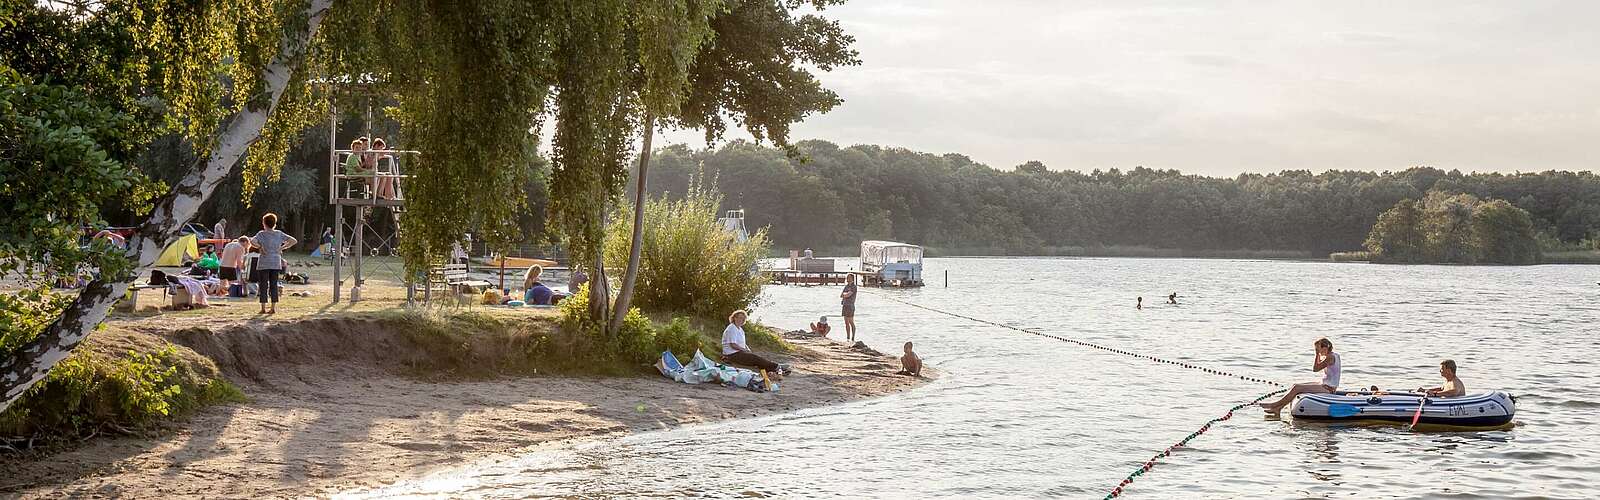 Schlauchbootfahren in Kallinchen ,
        
    

        Foto: Tourismusverband Fläming e.V./Jedrzej Marzecki